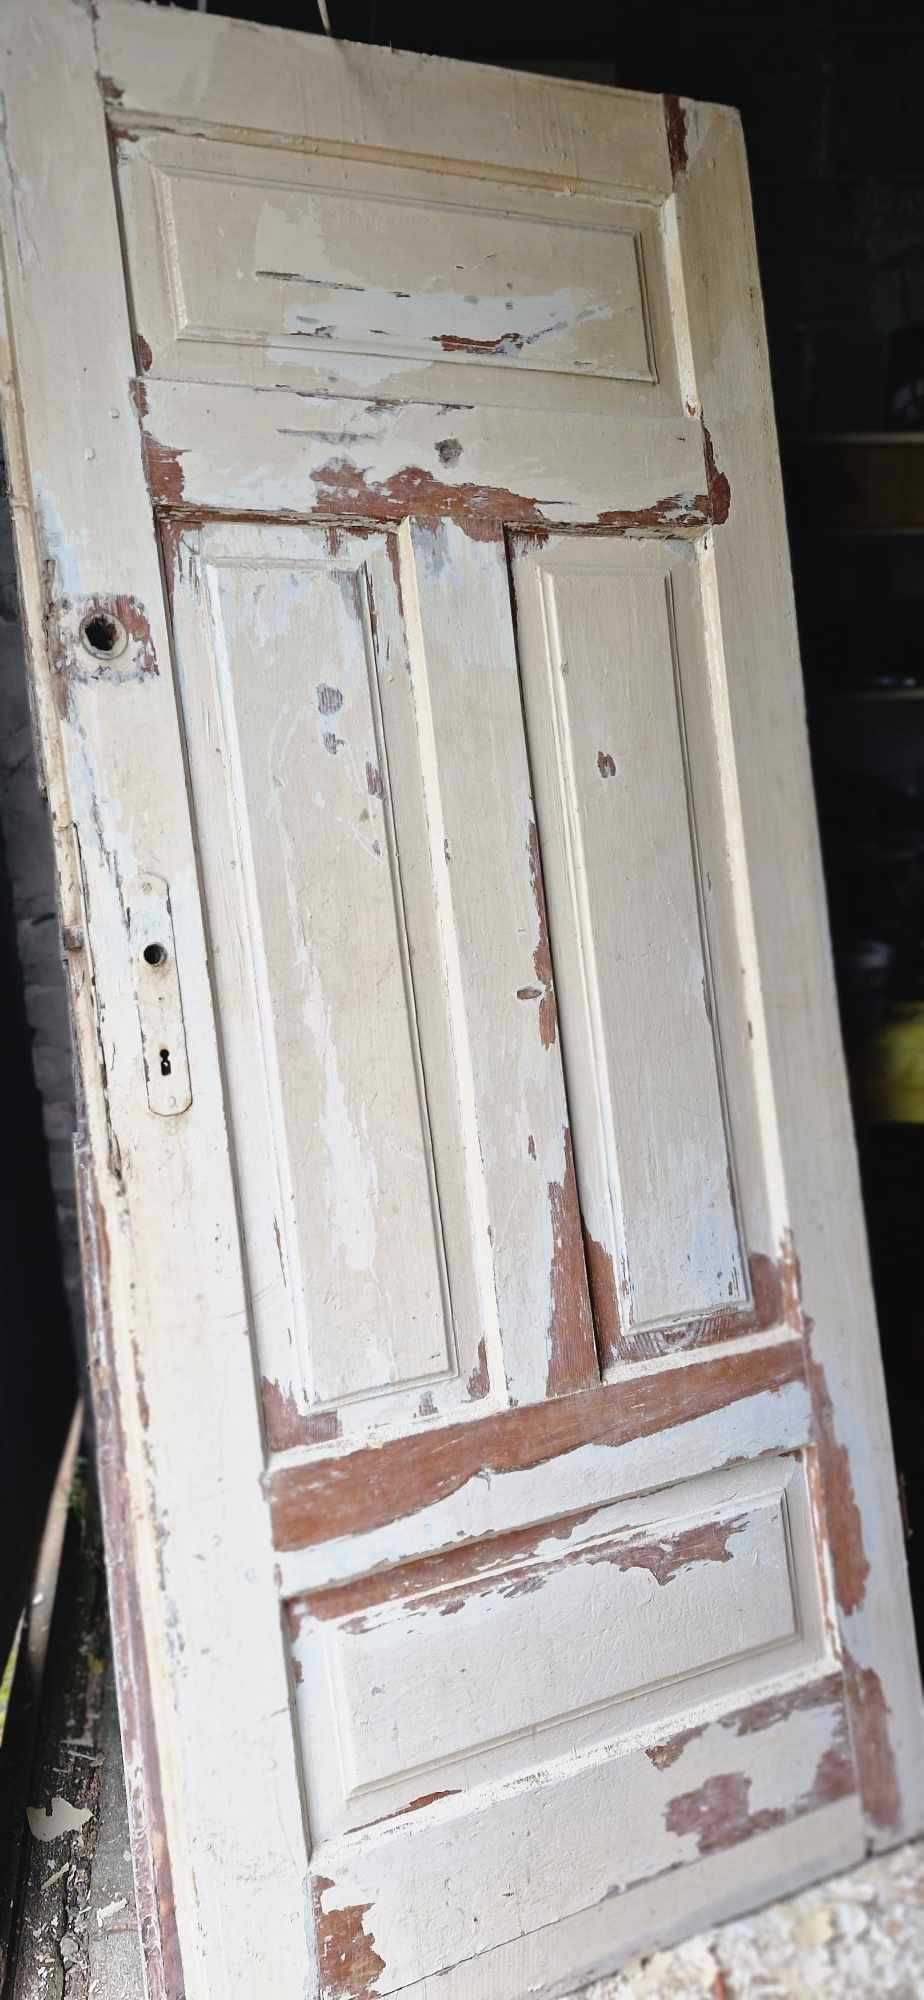 Stare, drewniane drzwi x 2